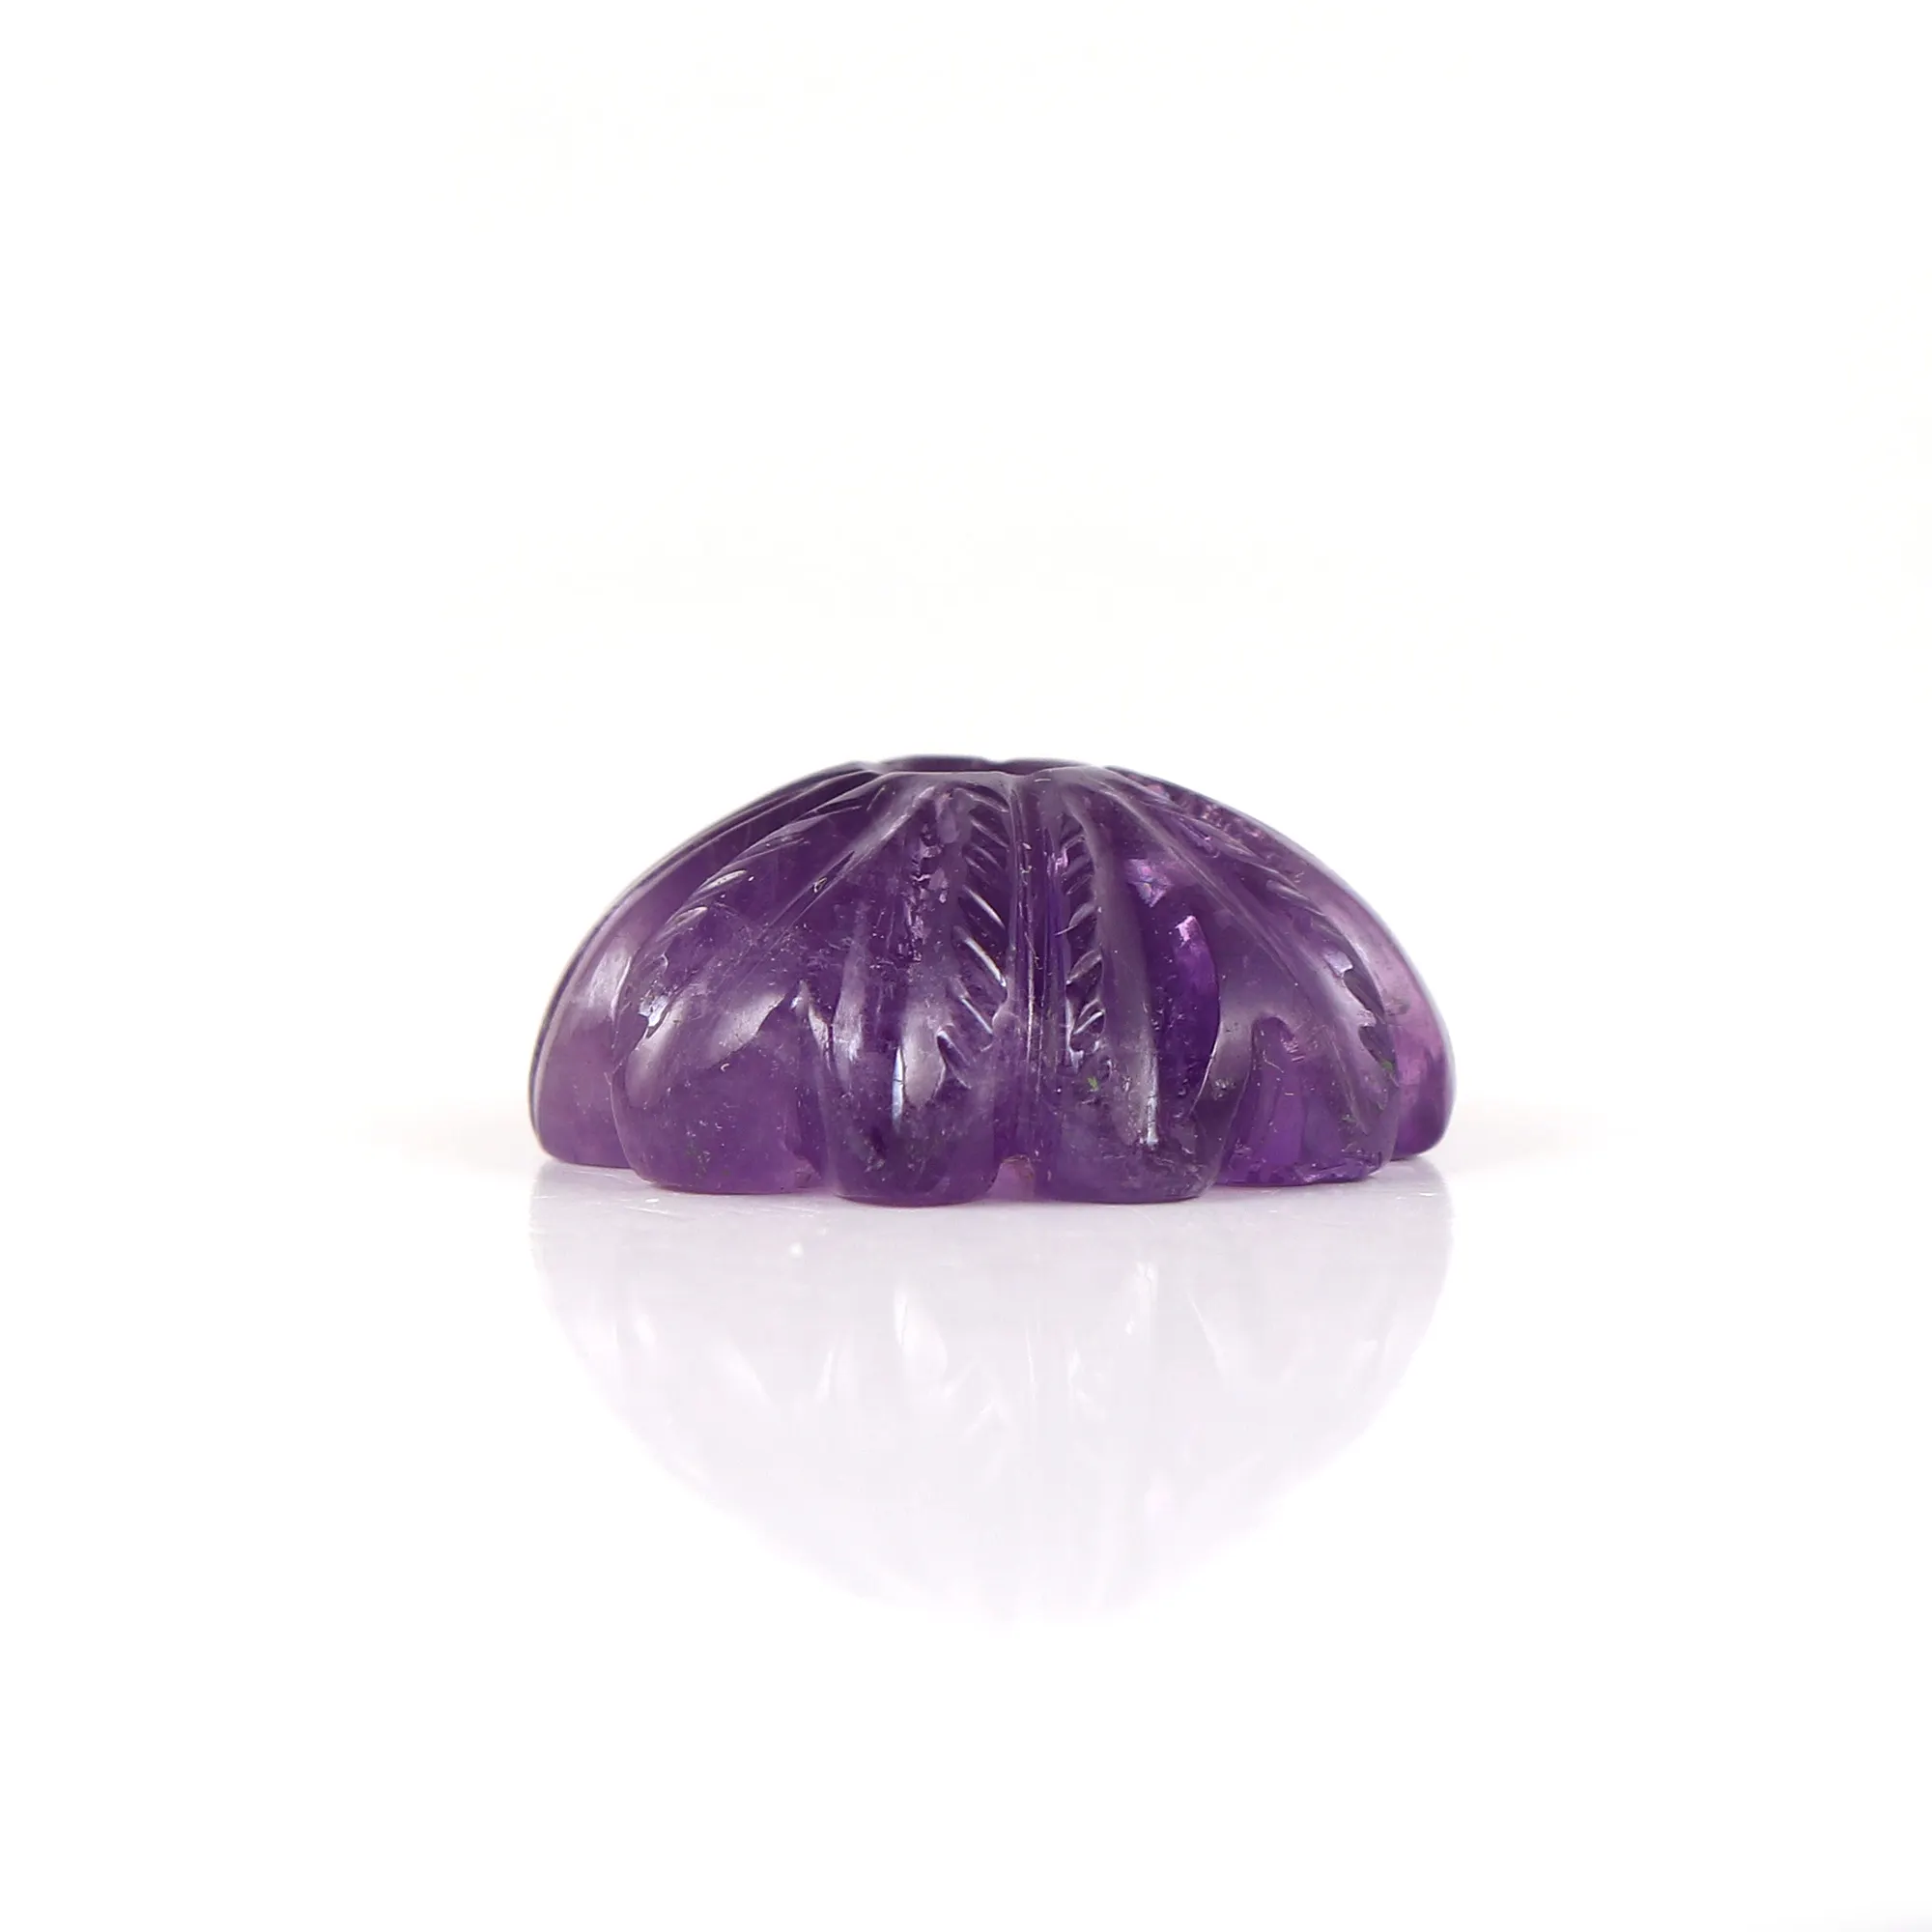 Batu bunga kecubung Afrika longgar bantal terkalibrasi potongan ungu batu permata Amethyst produk Massal buatan tangan